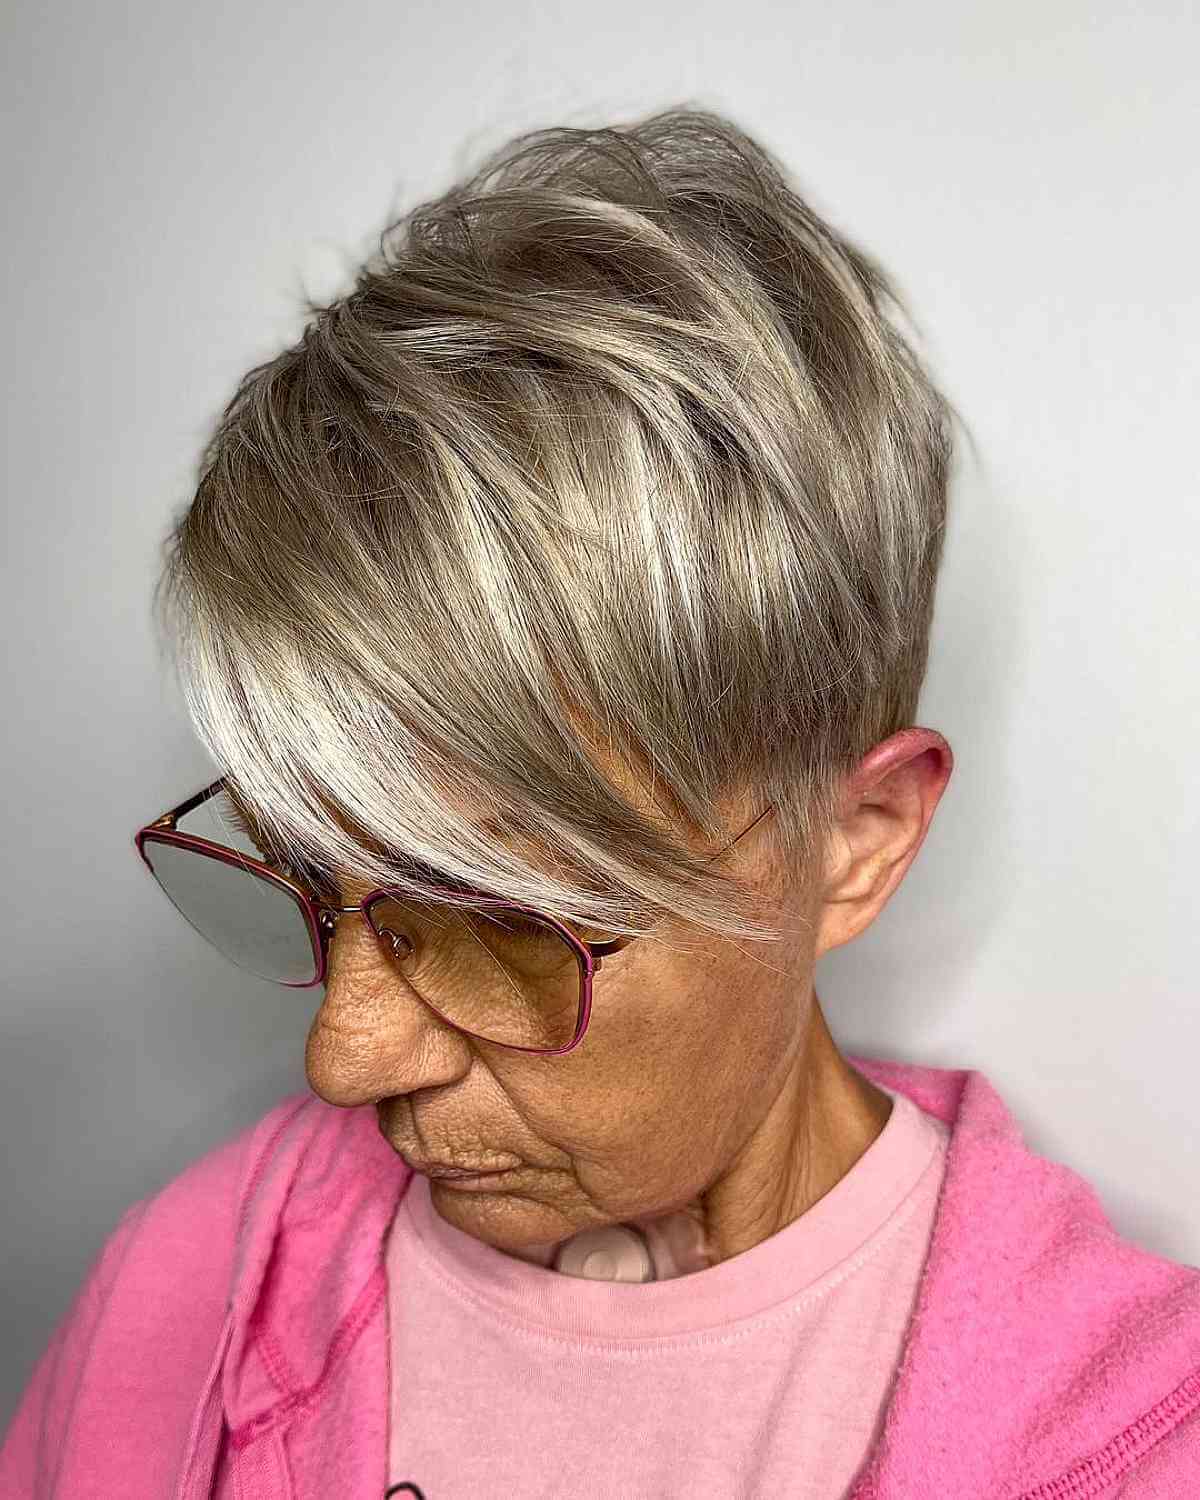 Женщина со стрижкой пикси с удлиненной боковой челкой на светлых волосах